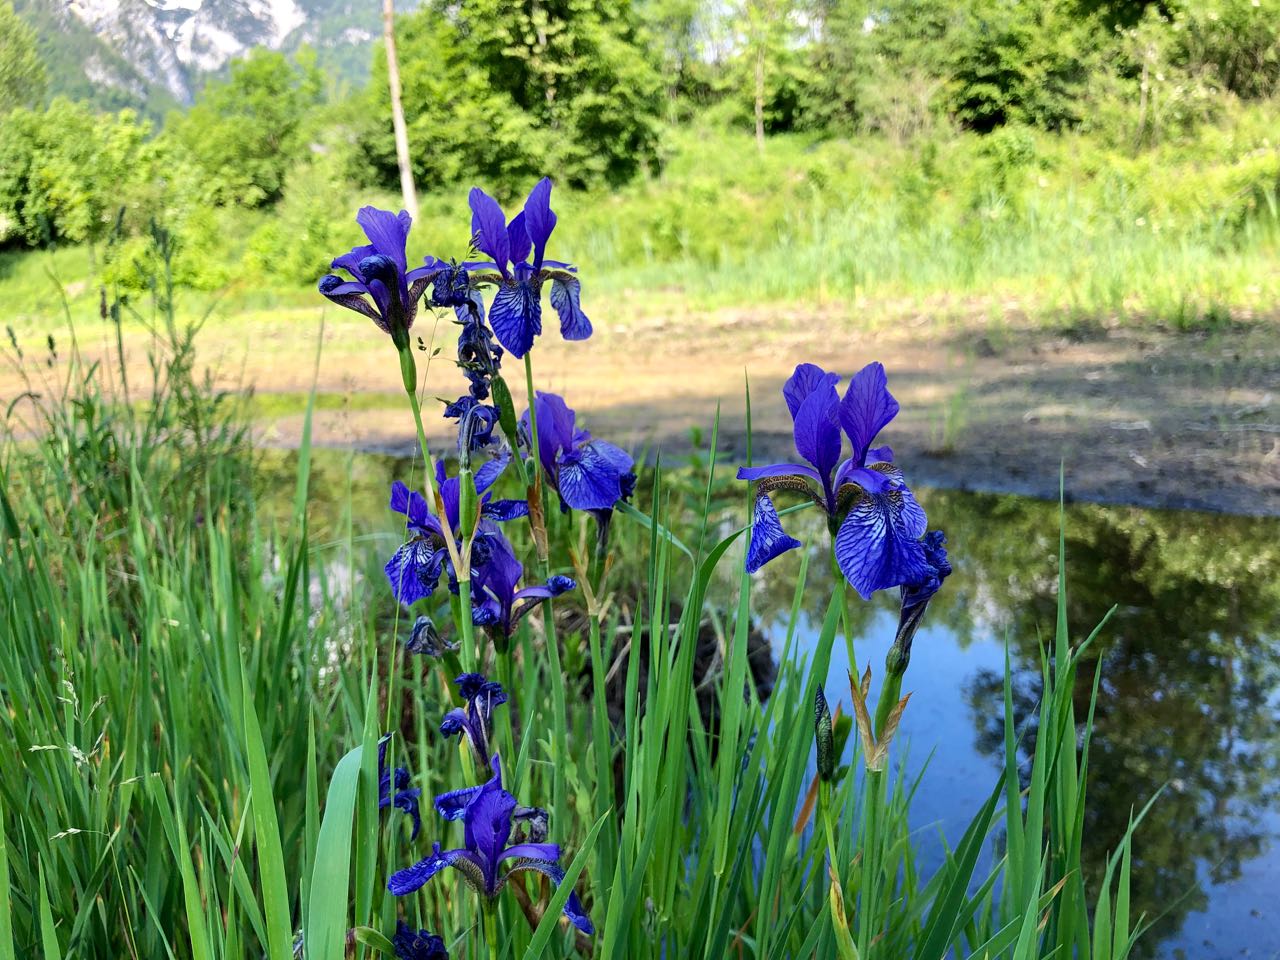 Irisblüten Ende Mai 2021 auf den Flächen des Rekultivierungsprojektes der HBLFA Raumberg-Gumpenstein in Trautenfels